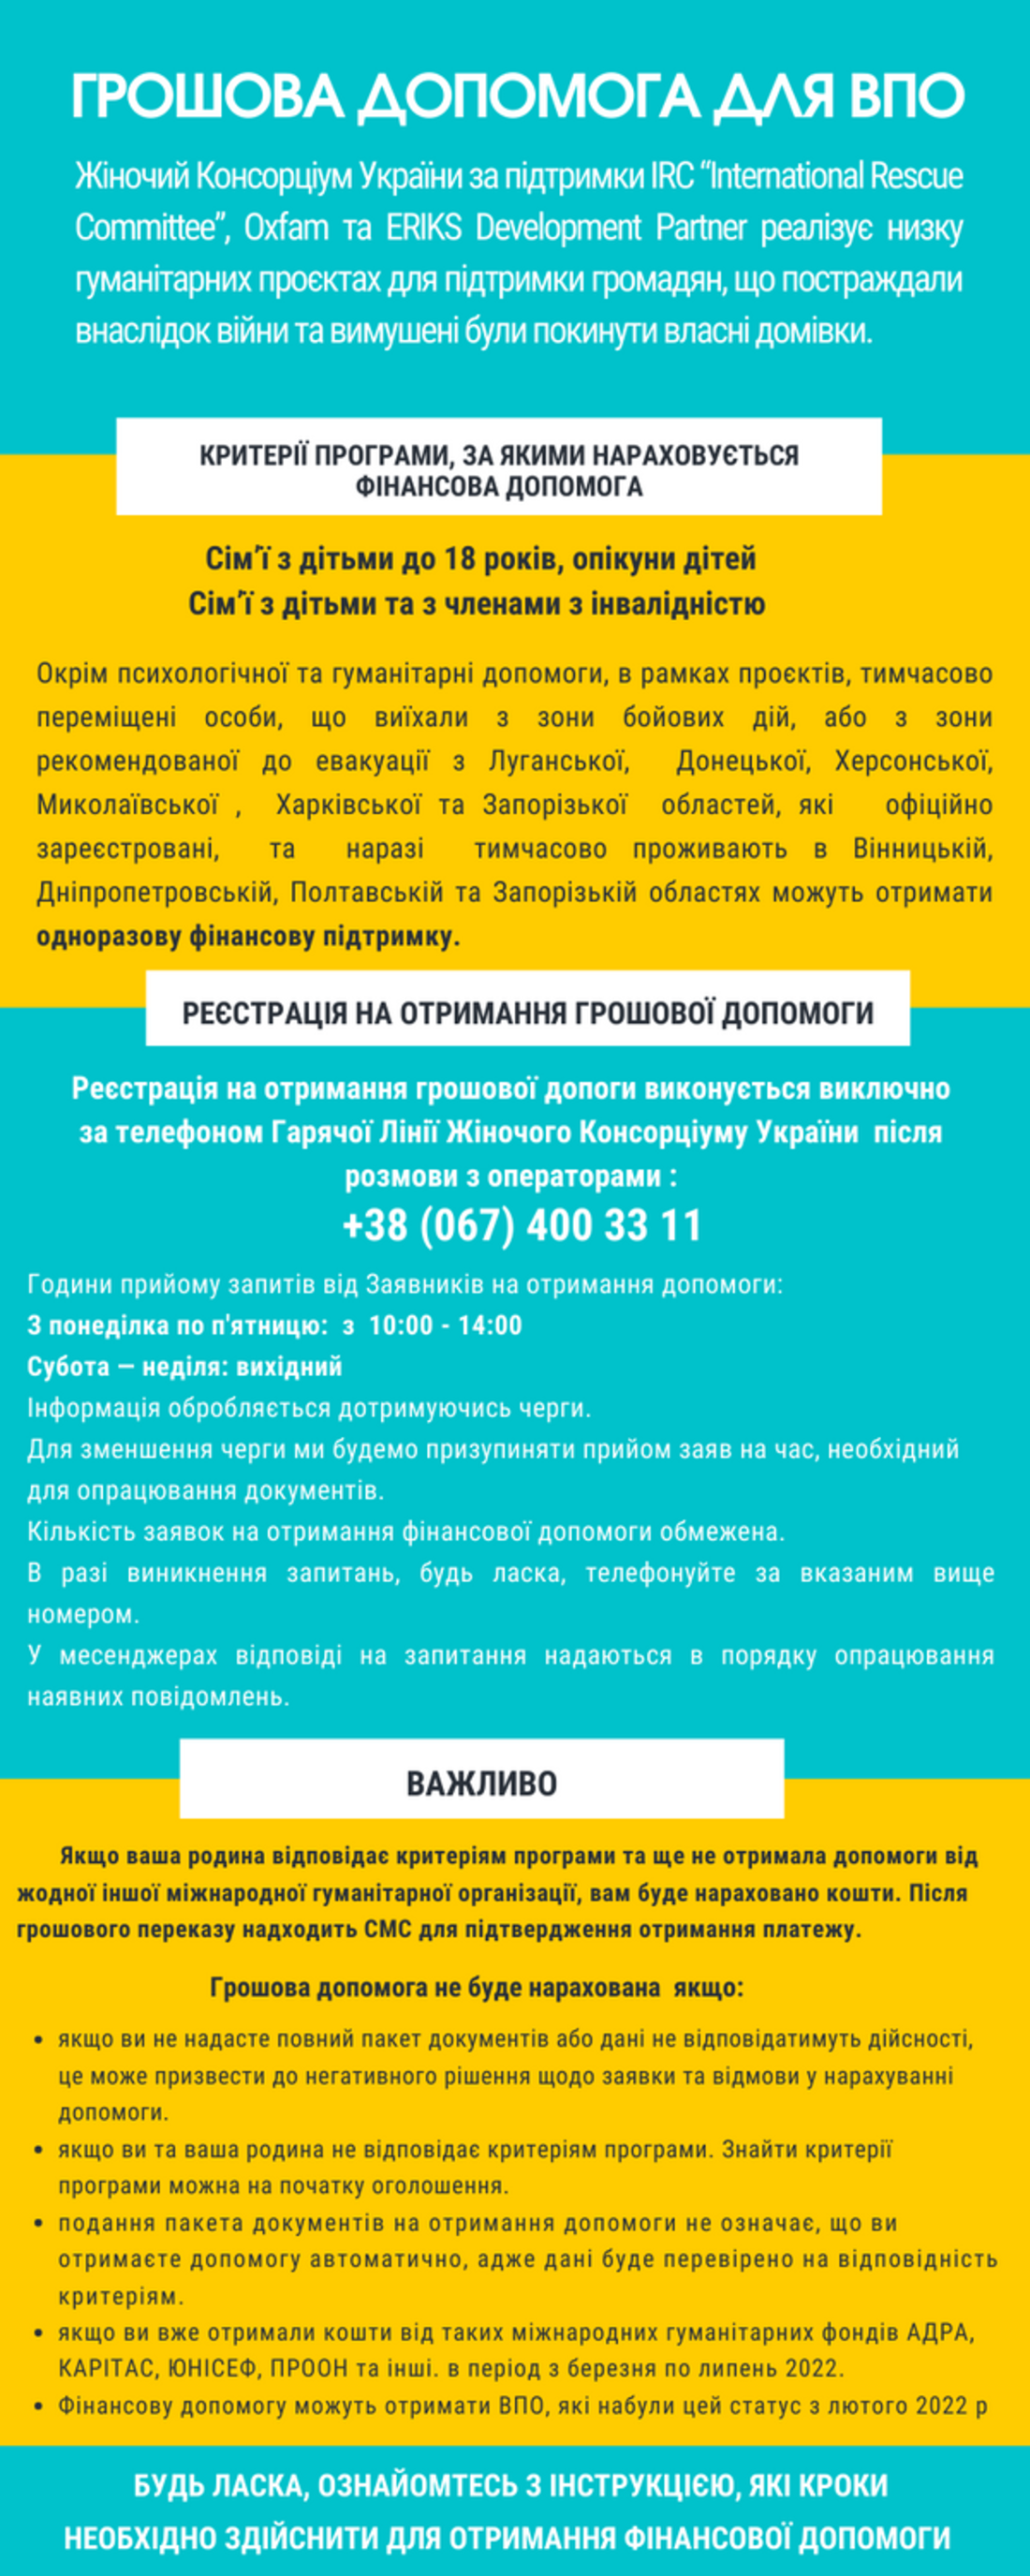 Жіночий консорціум України надає грошову допомогу - як отримати 6600 гривень